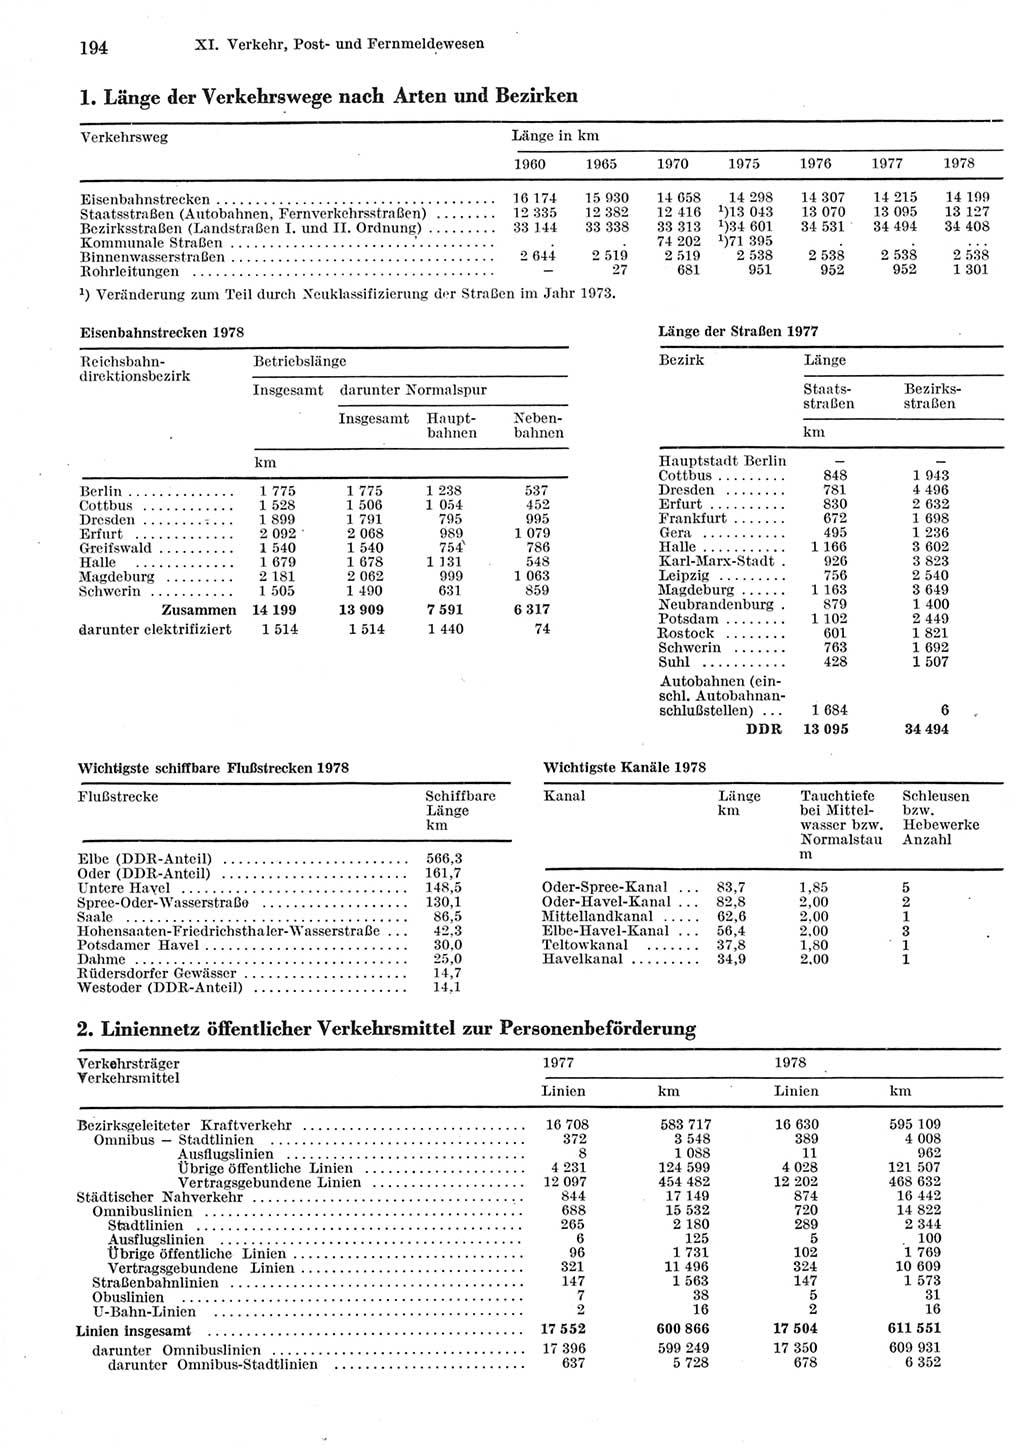 Statistisches Jahrbuch der Deutschen Demokratischen Republik (DDR) 1979, Seite 194 (Stat. Jb. DDR 1979, S. 194)